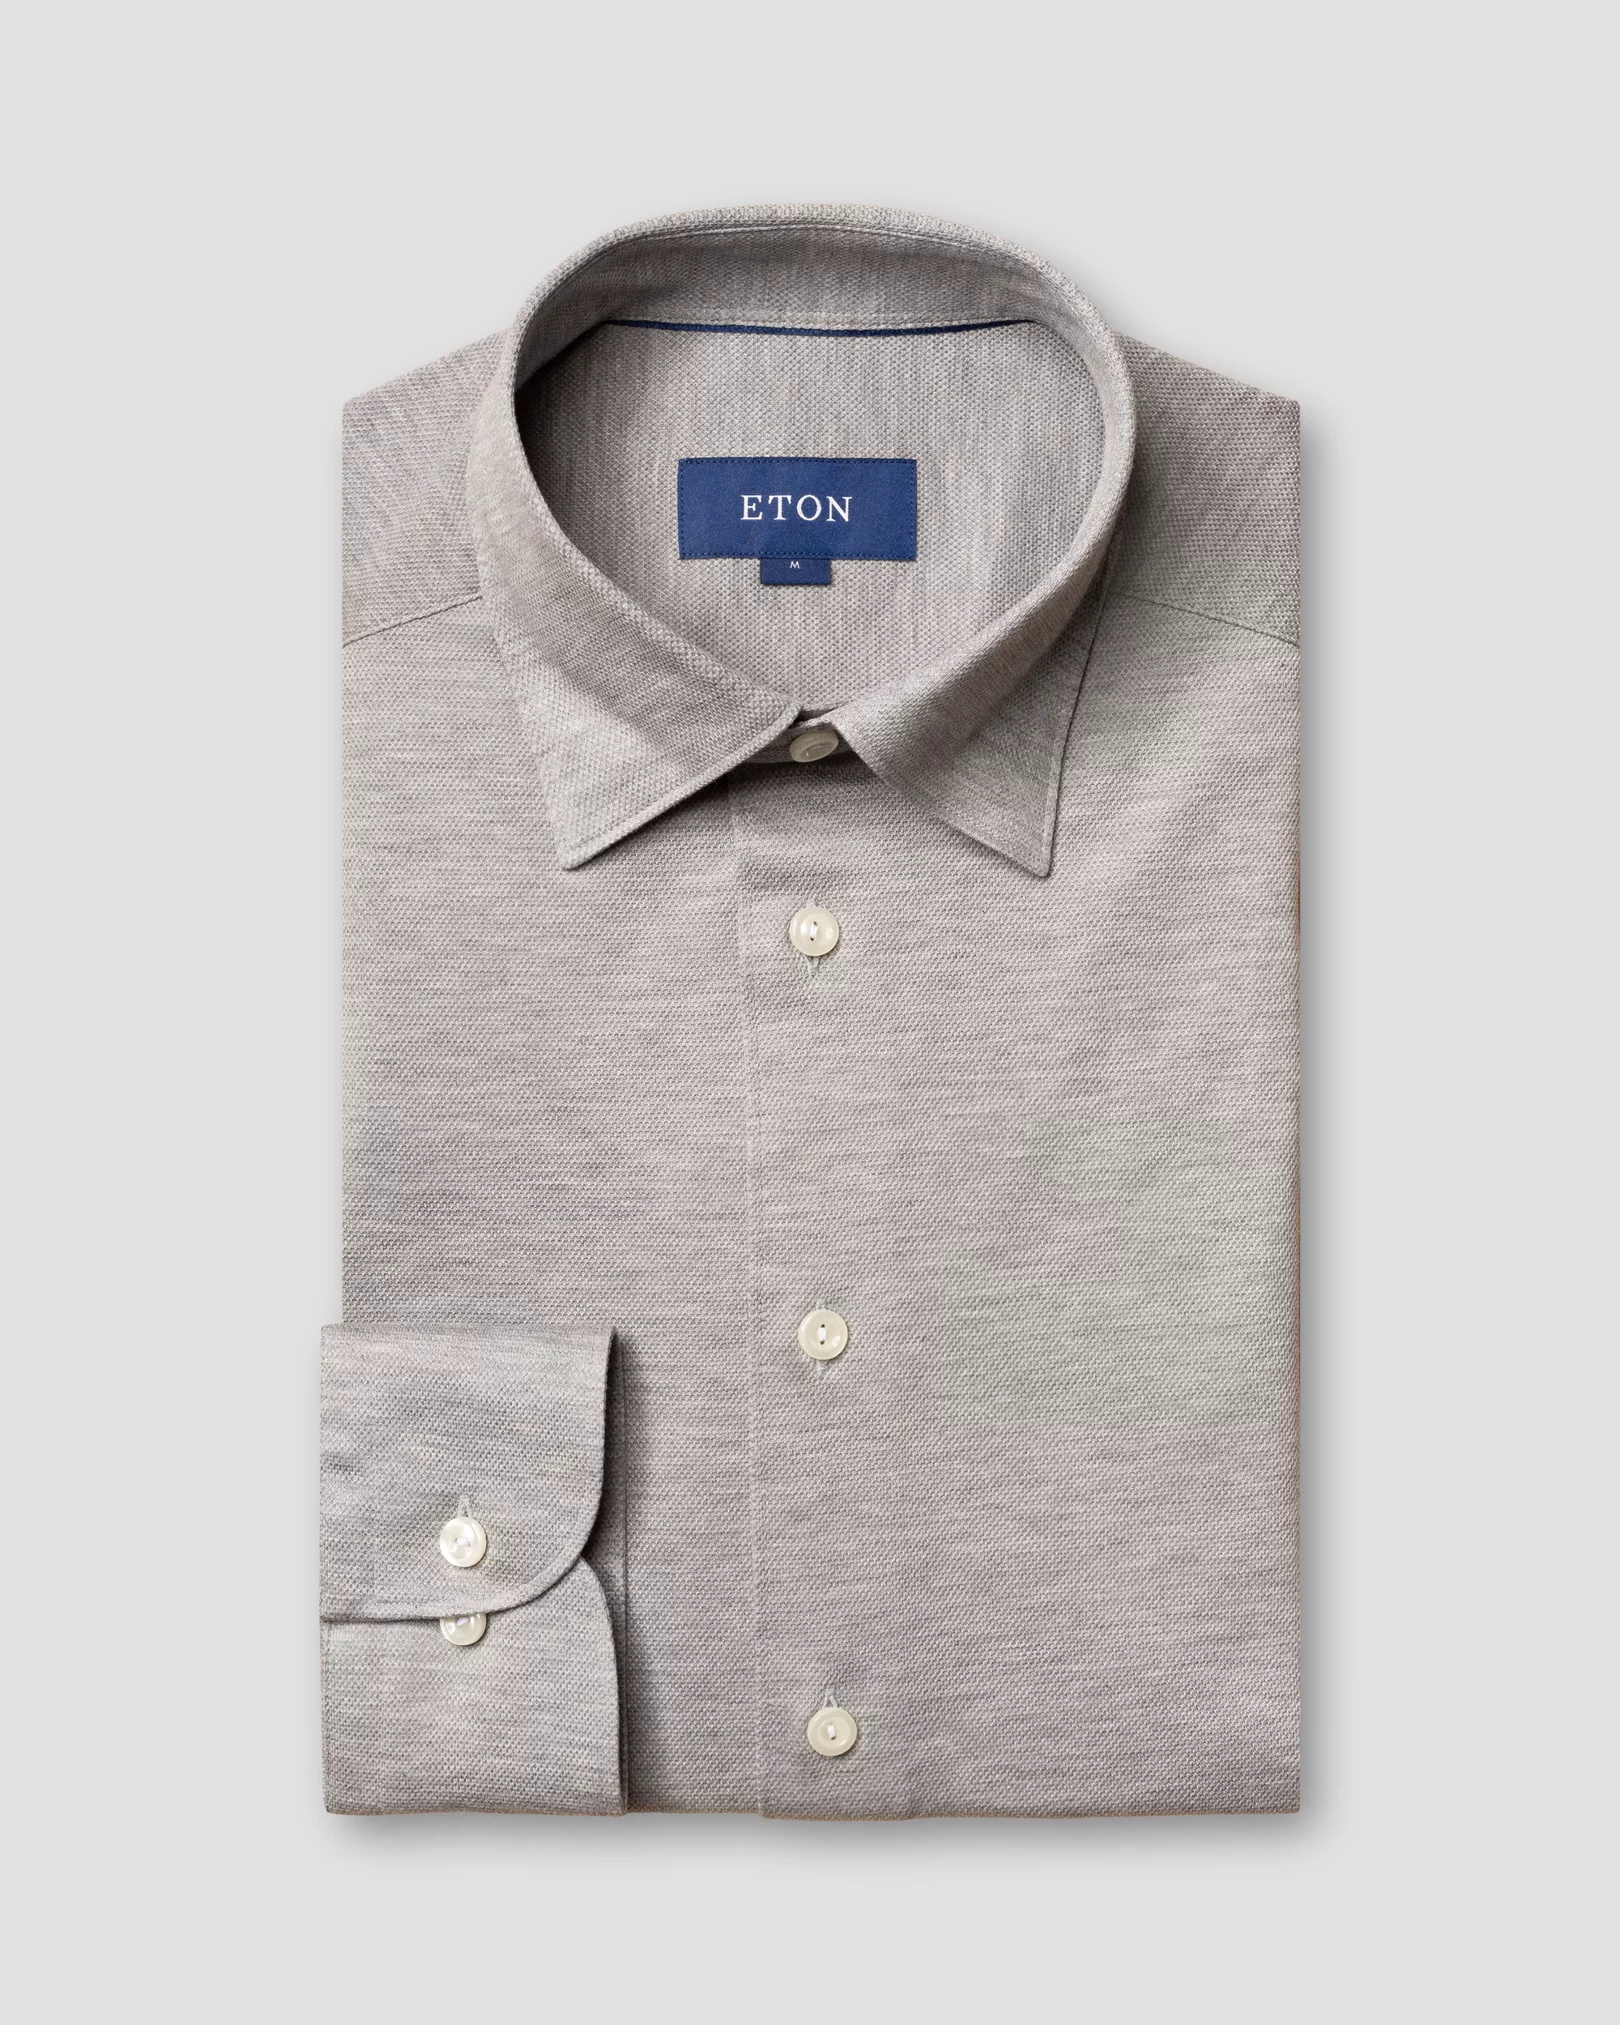 Eton - light grey pique shirt long sleeved button under